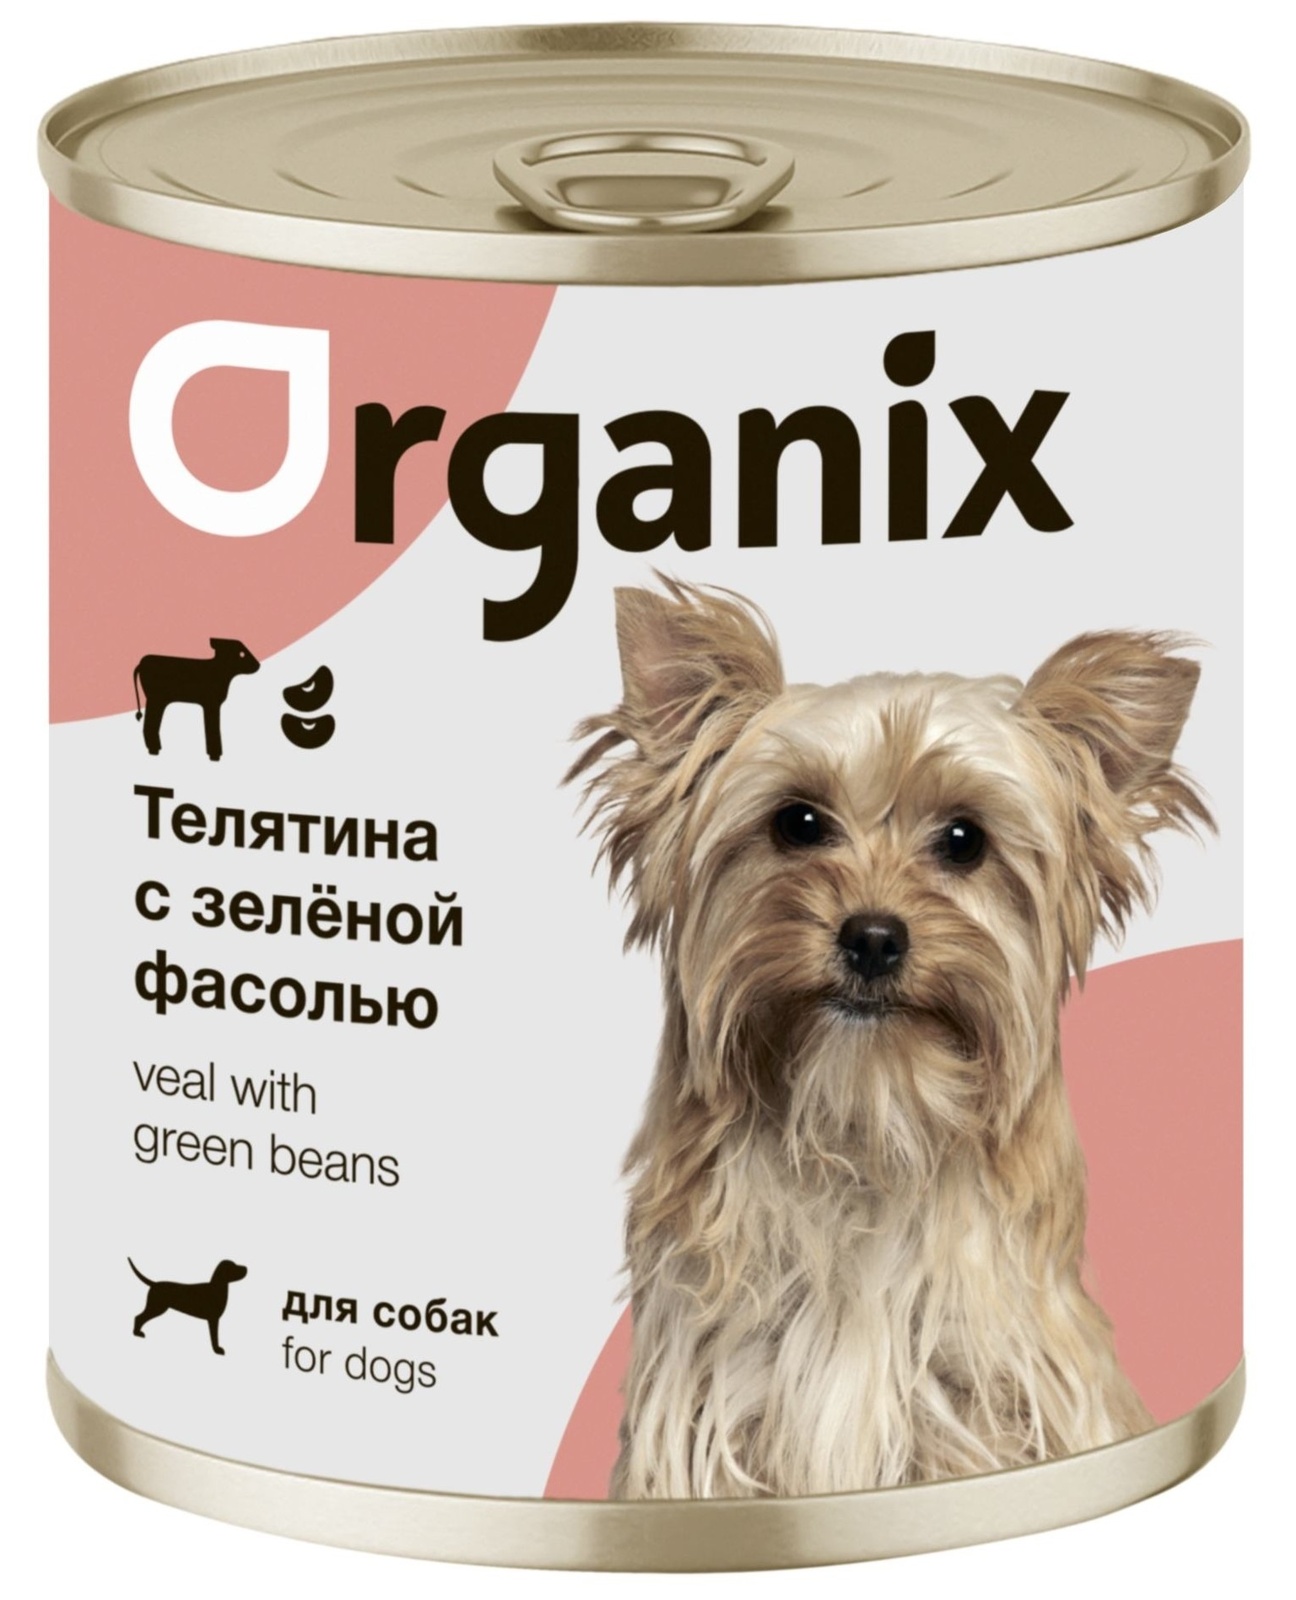 Organix консервы Organix консервы для собак Телятина с зеленой фасолью (750 г) organix консервы organix консервы для собак сочная утка с печенью и тыквой 750 г